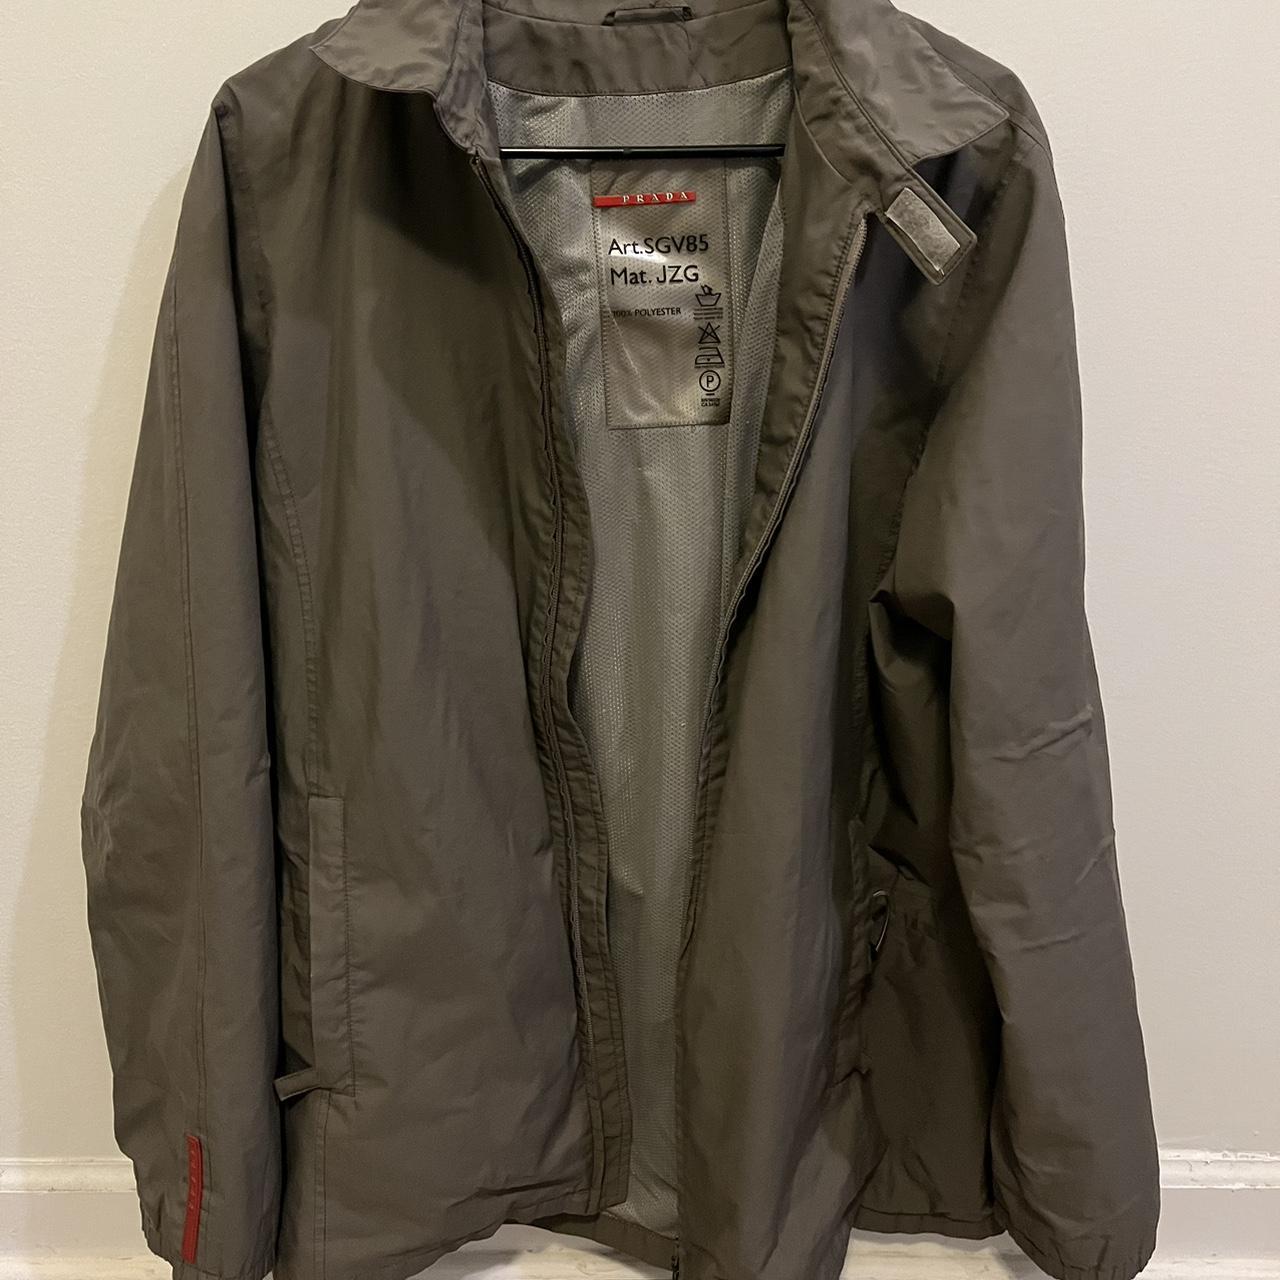 Prada goretex windbreaker jacket Vintage 90s-00s... - Depop